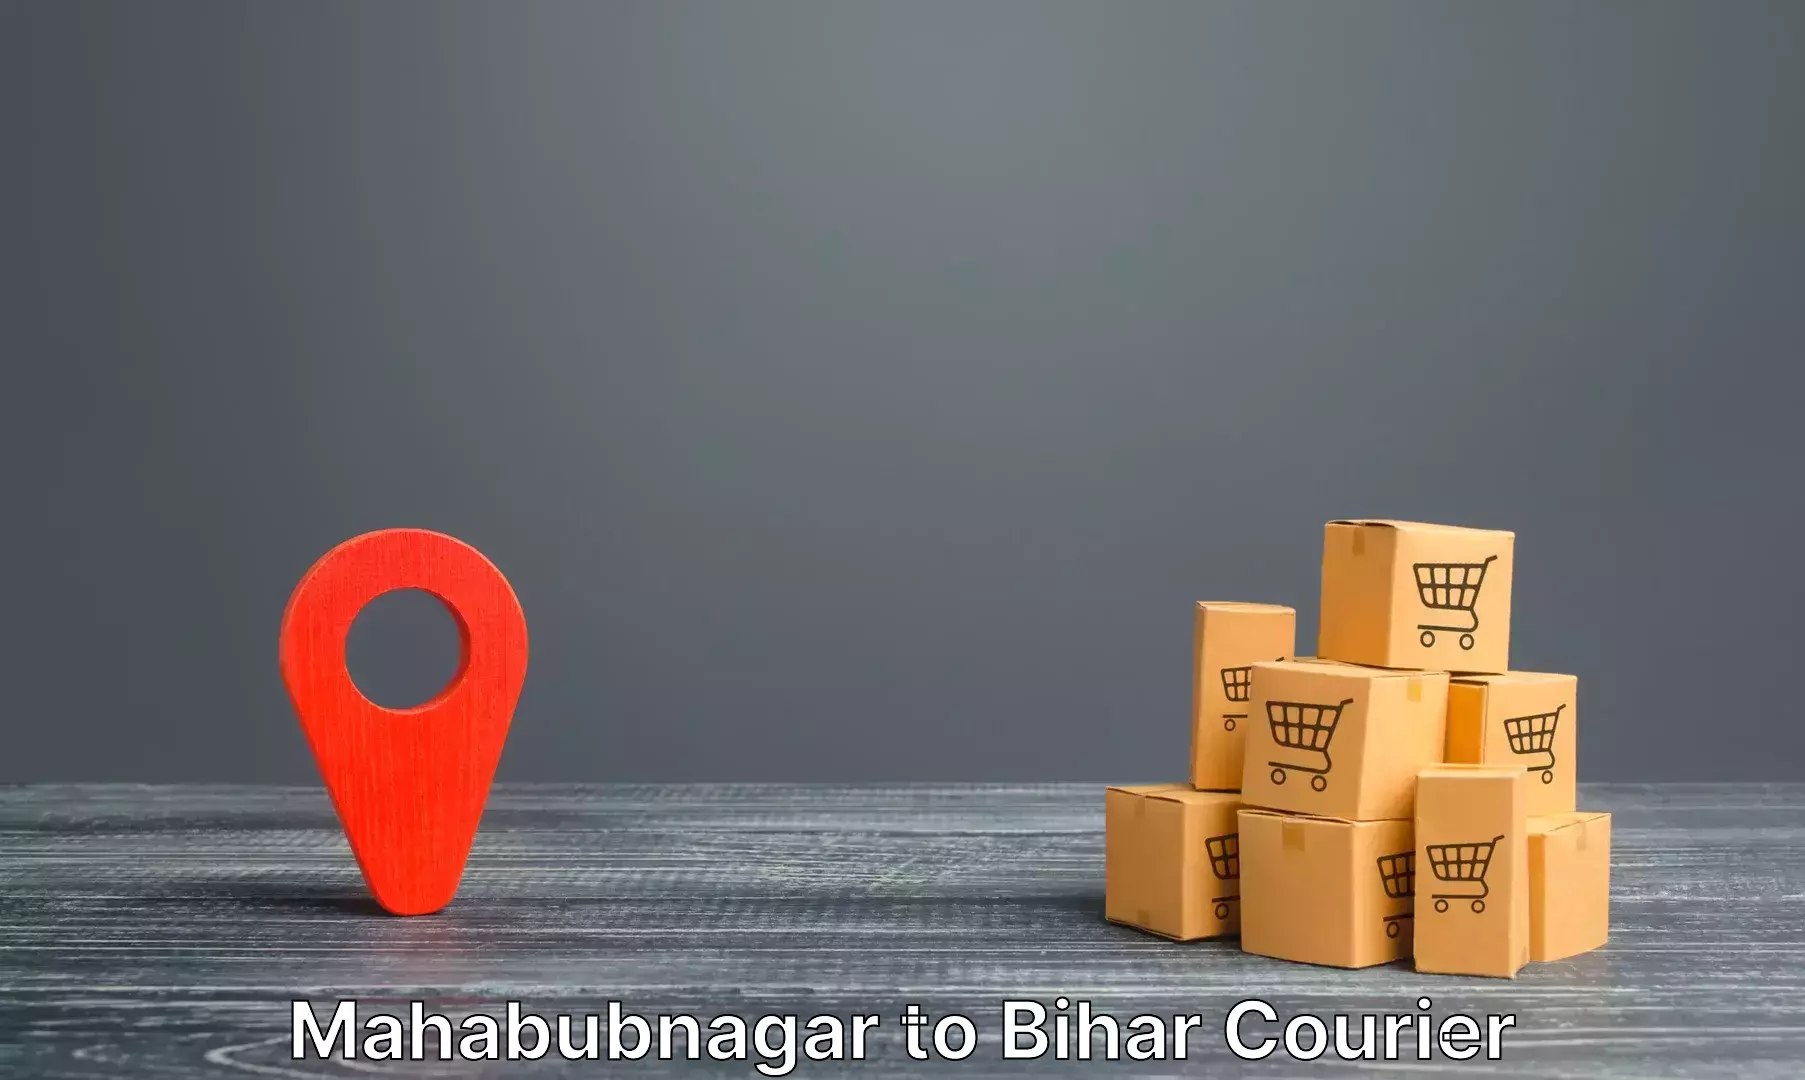 Luggage shipping service Mahabubnagar to Gaya